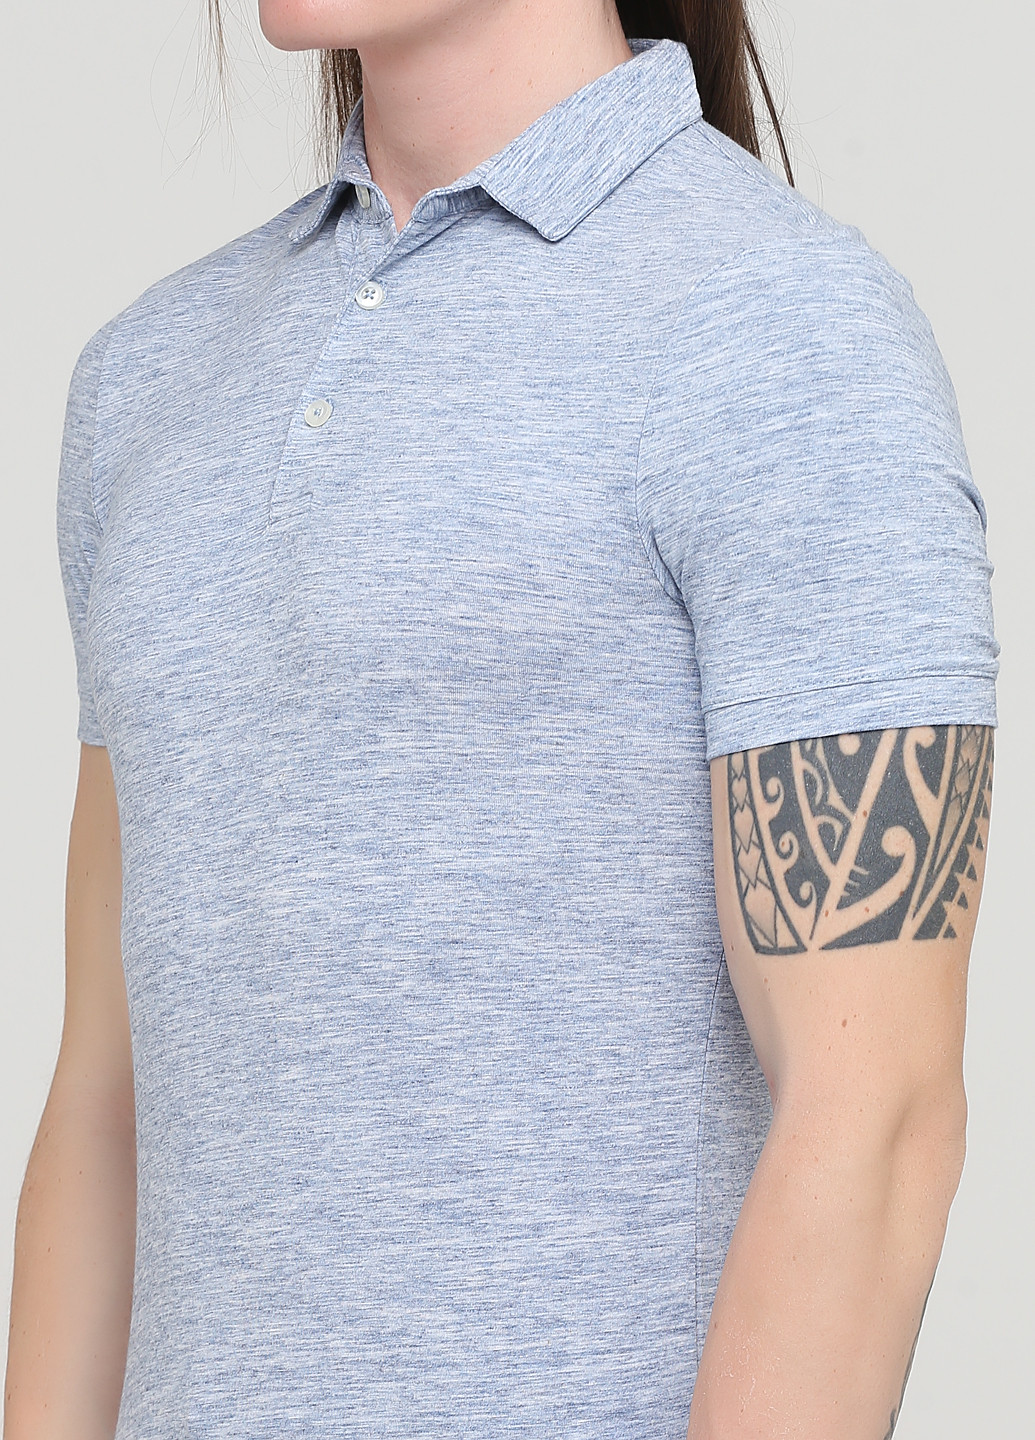 Голубой футболка-футболка для мужчин H&M меланжевая